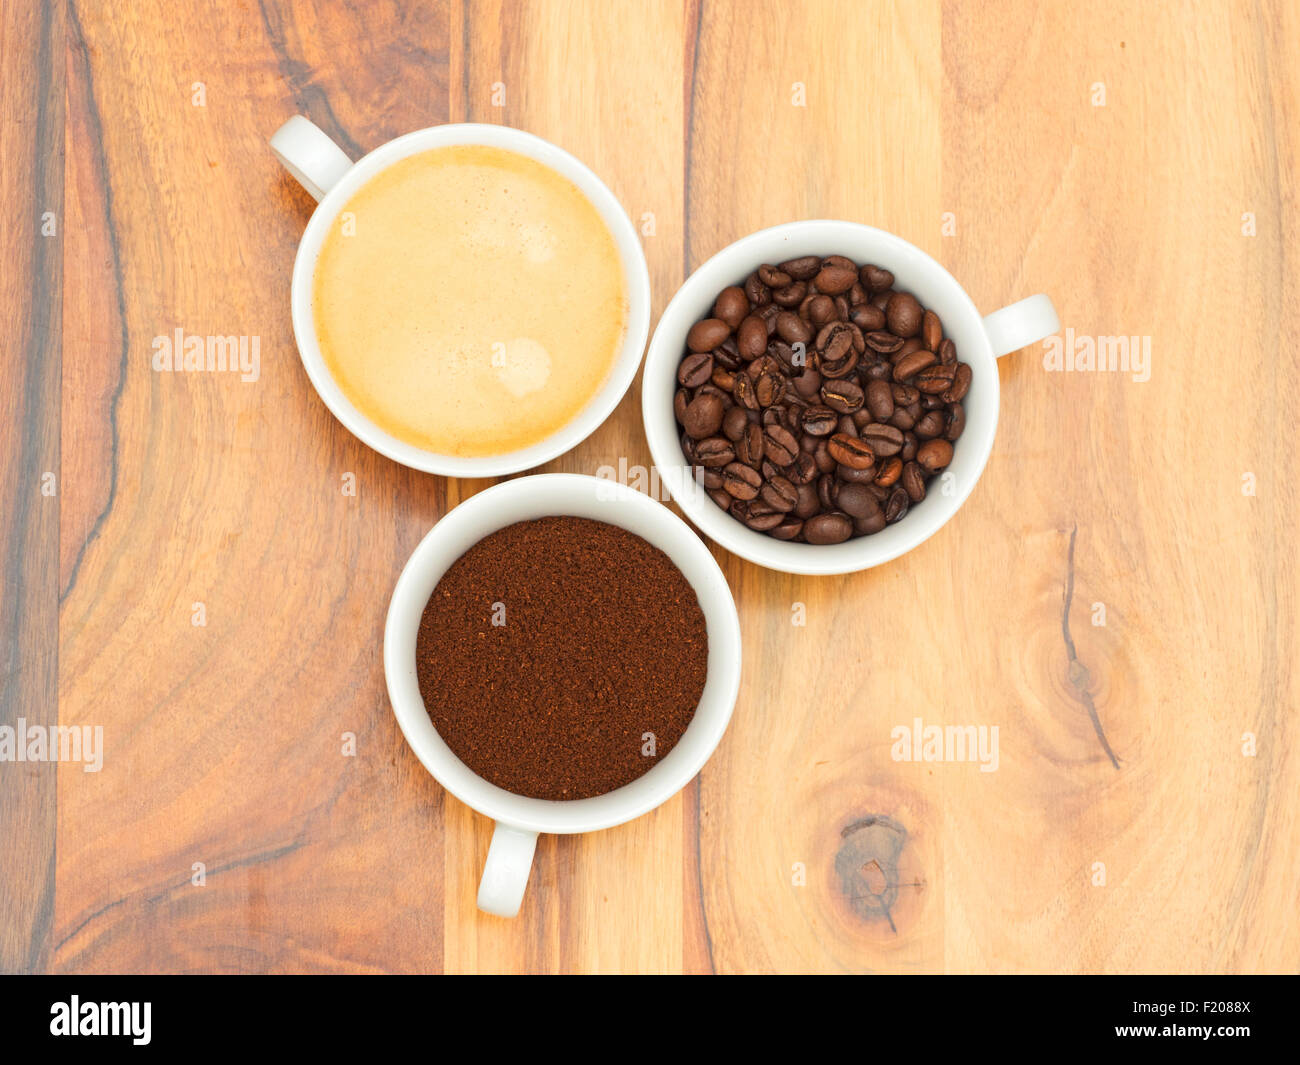 Tassen mit Kaffee, gemahlenem Kaffee und Kaffeebohnen Stock Photo